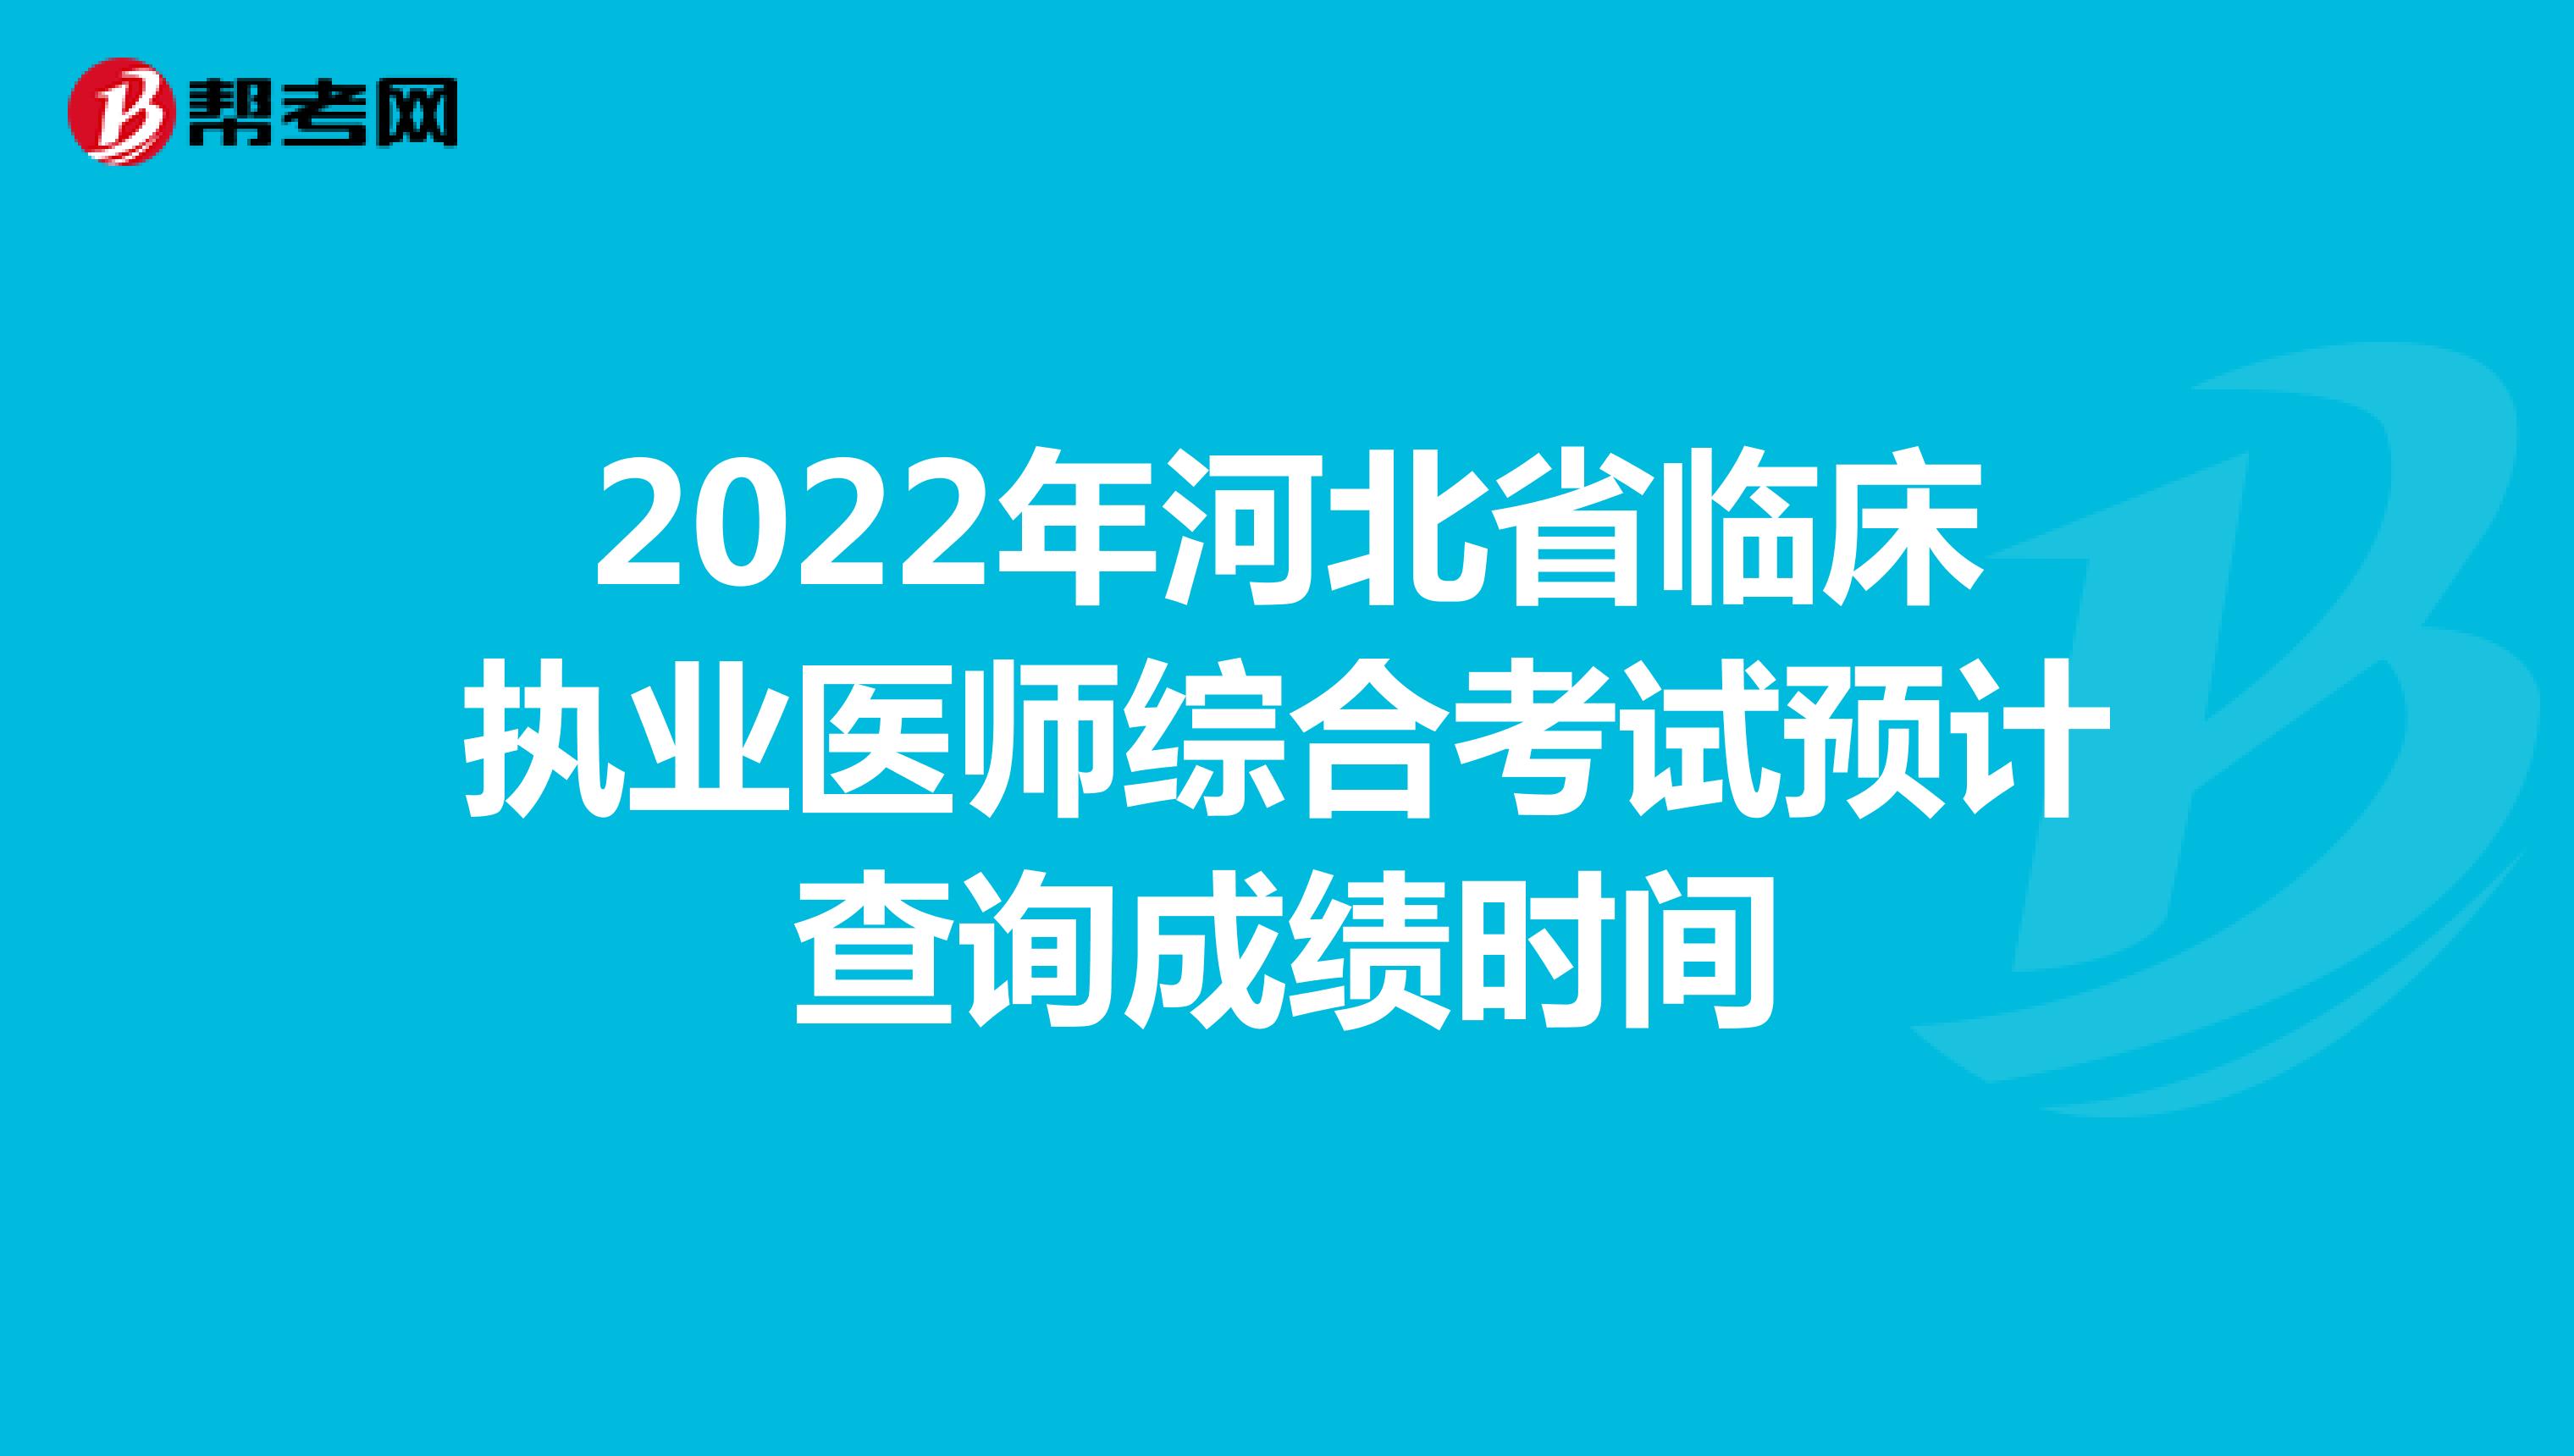 2022年河北省临床执业医师综合考试预计查询成绩时间